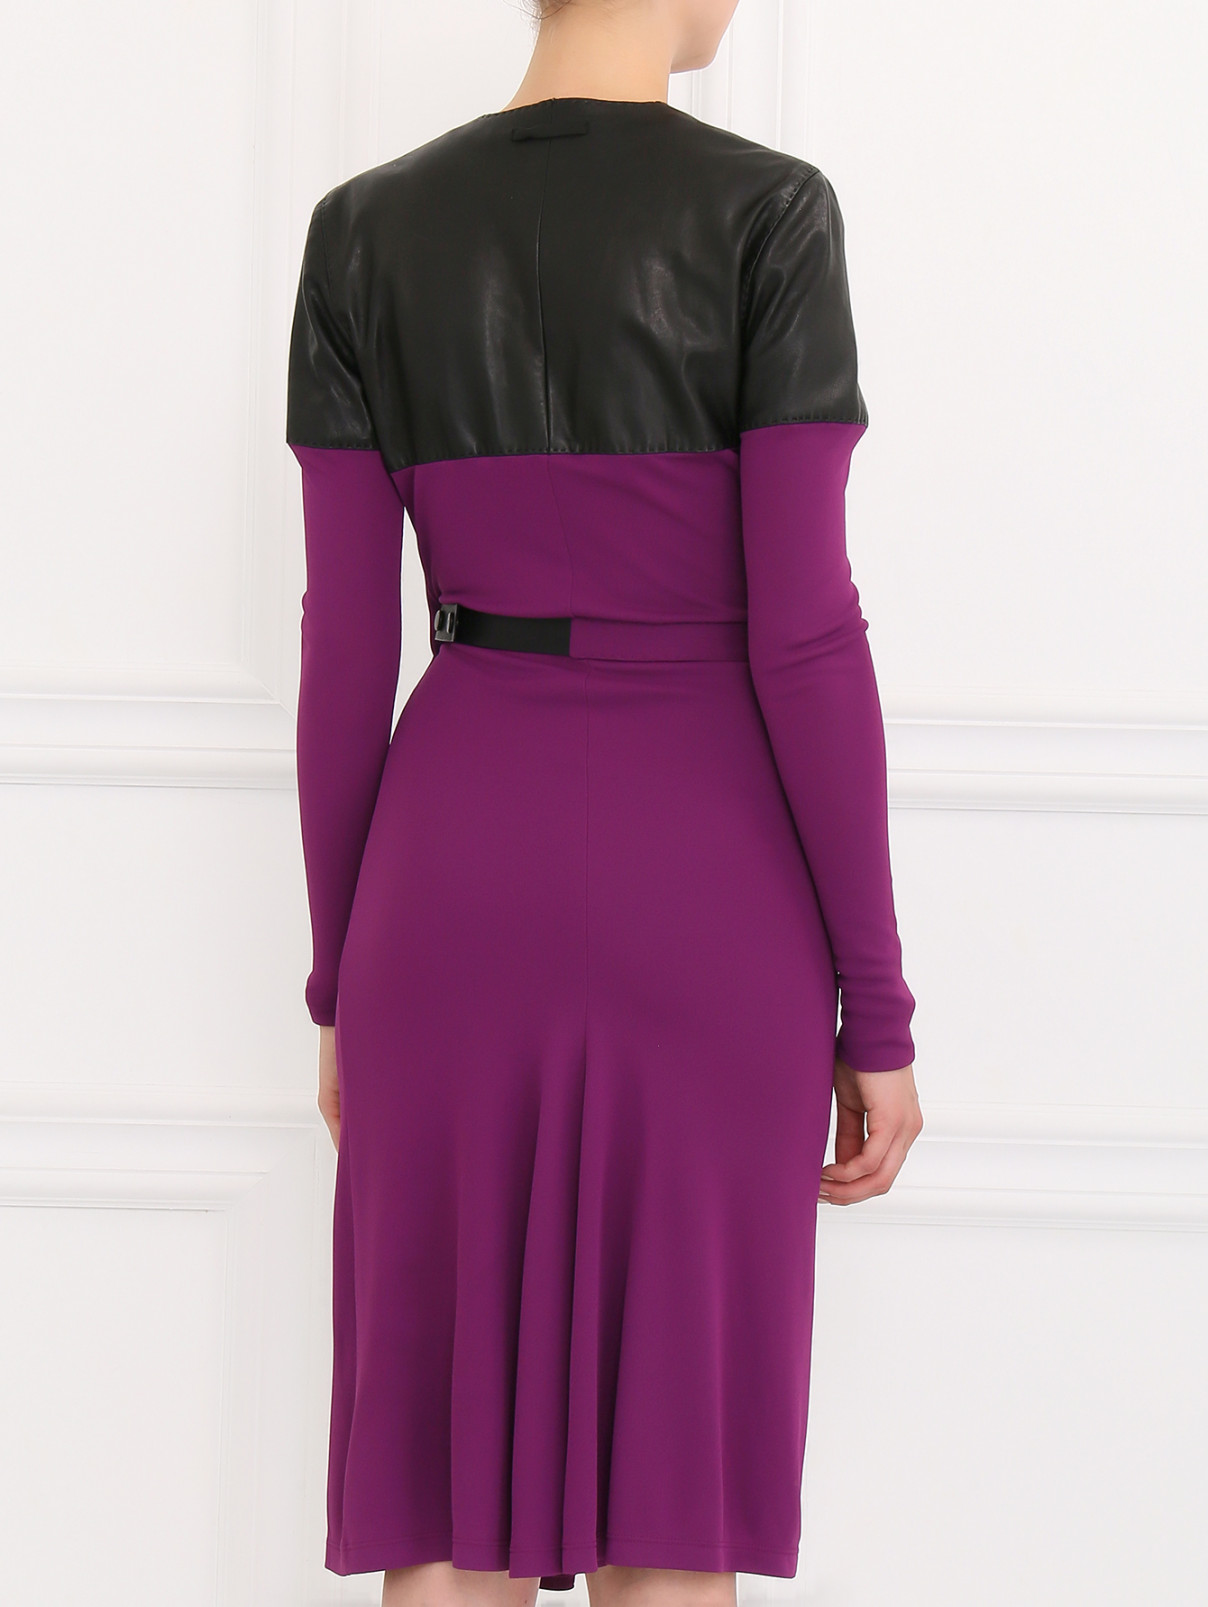 Платье с запахом и кожаными вставками Jean Paul Gaultier  –  Модель Верх-Низ1  – Цвет:  Фиолетовый